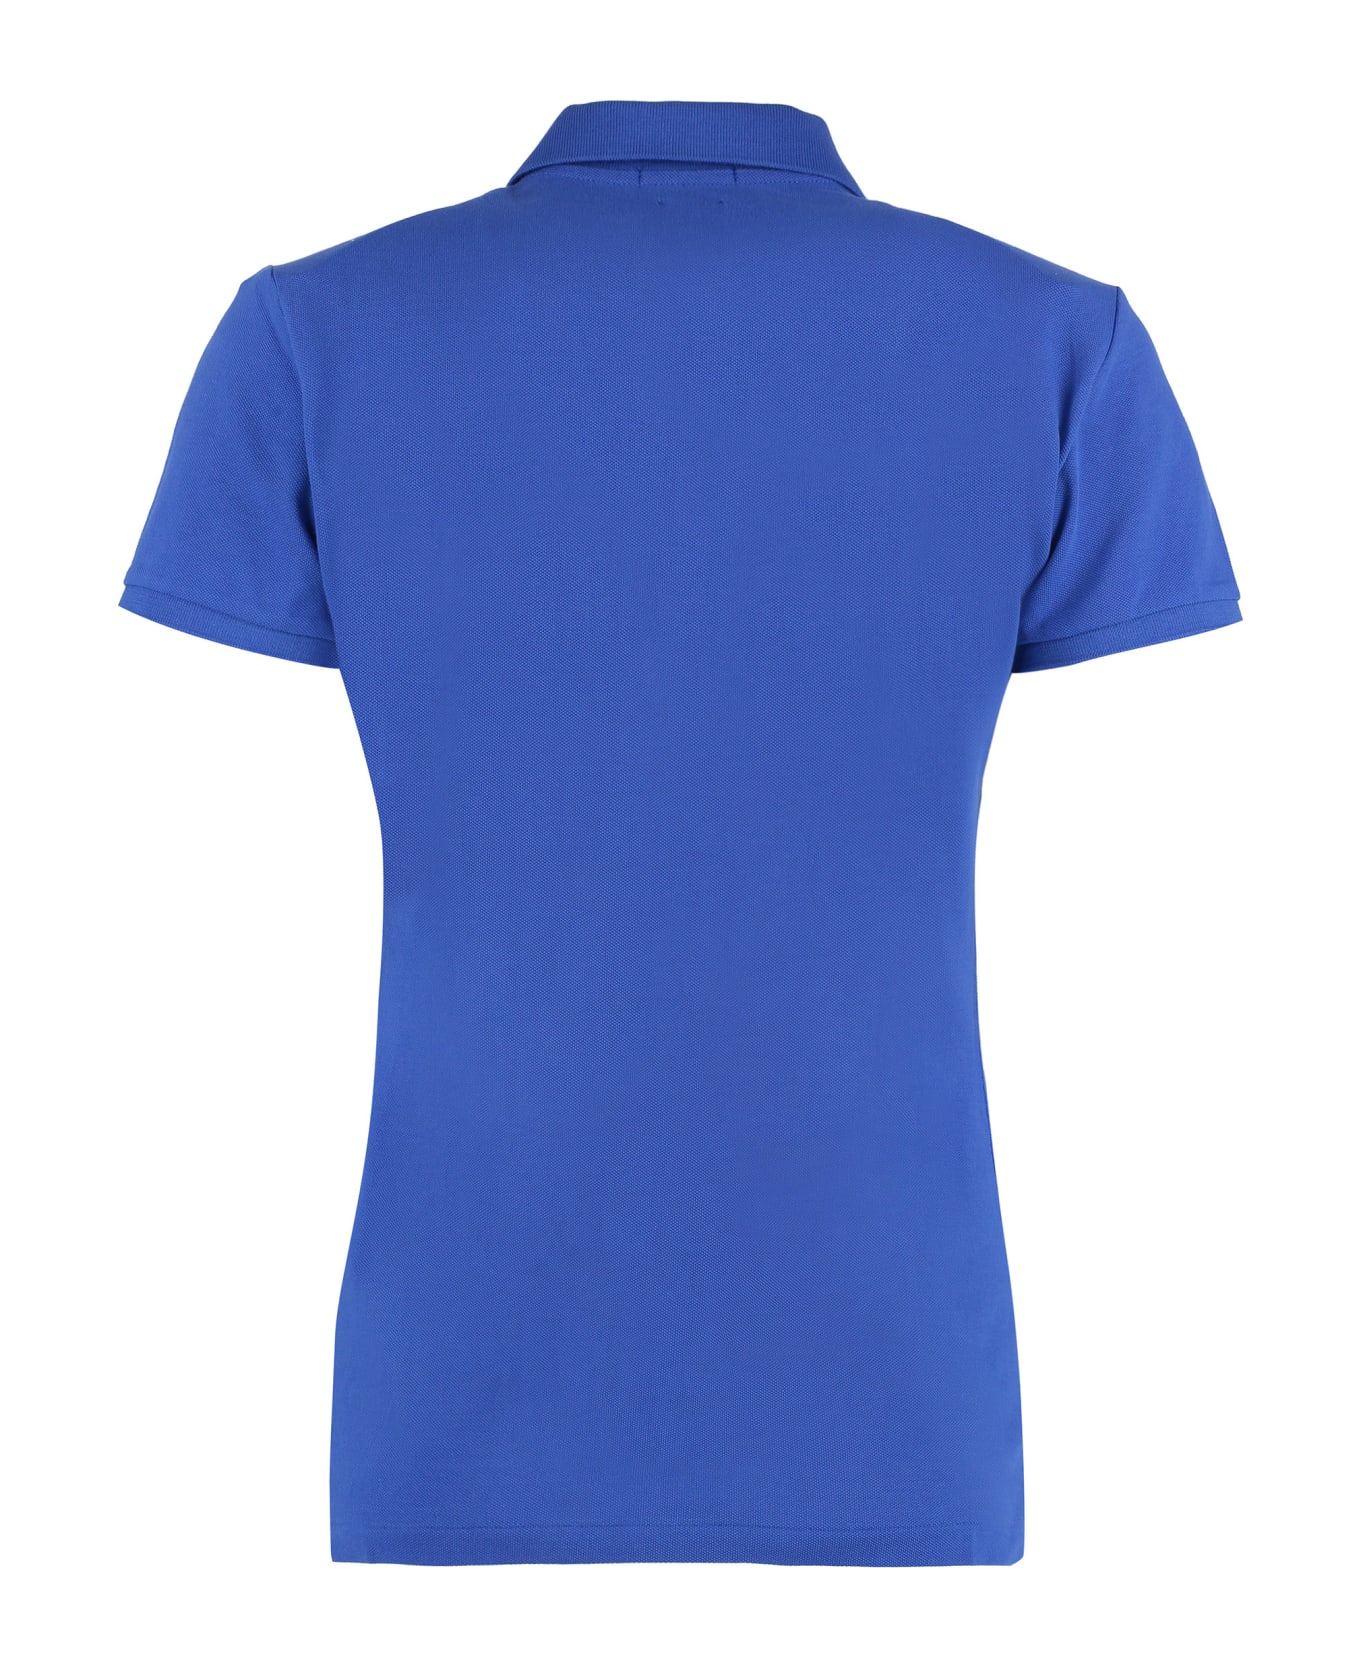 Polo Ralph Lauren Cotton-piqué Polo Shirt - blue